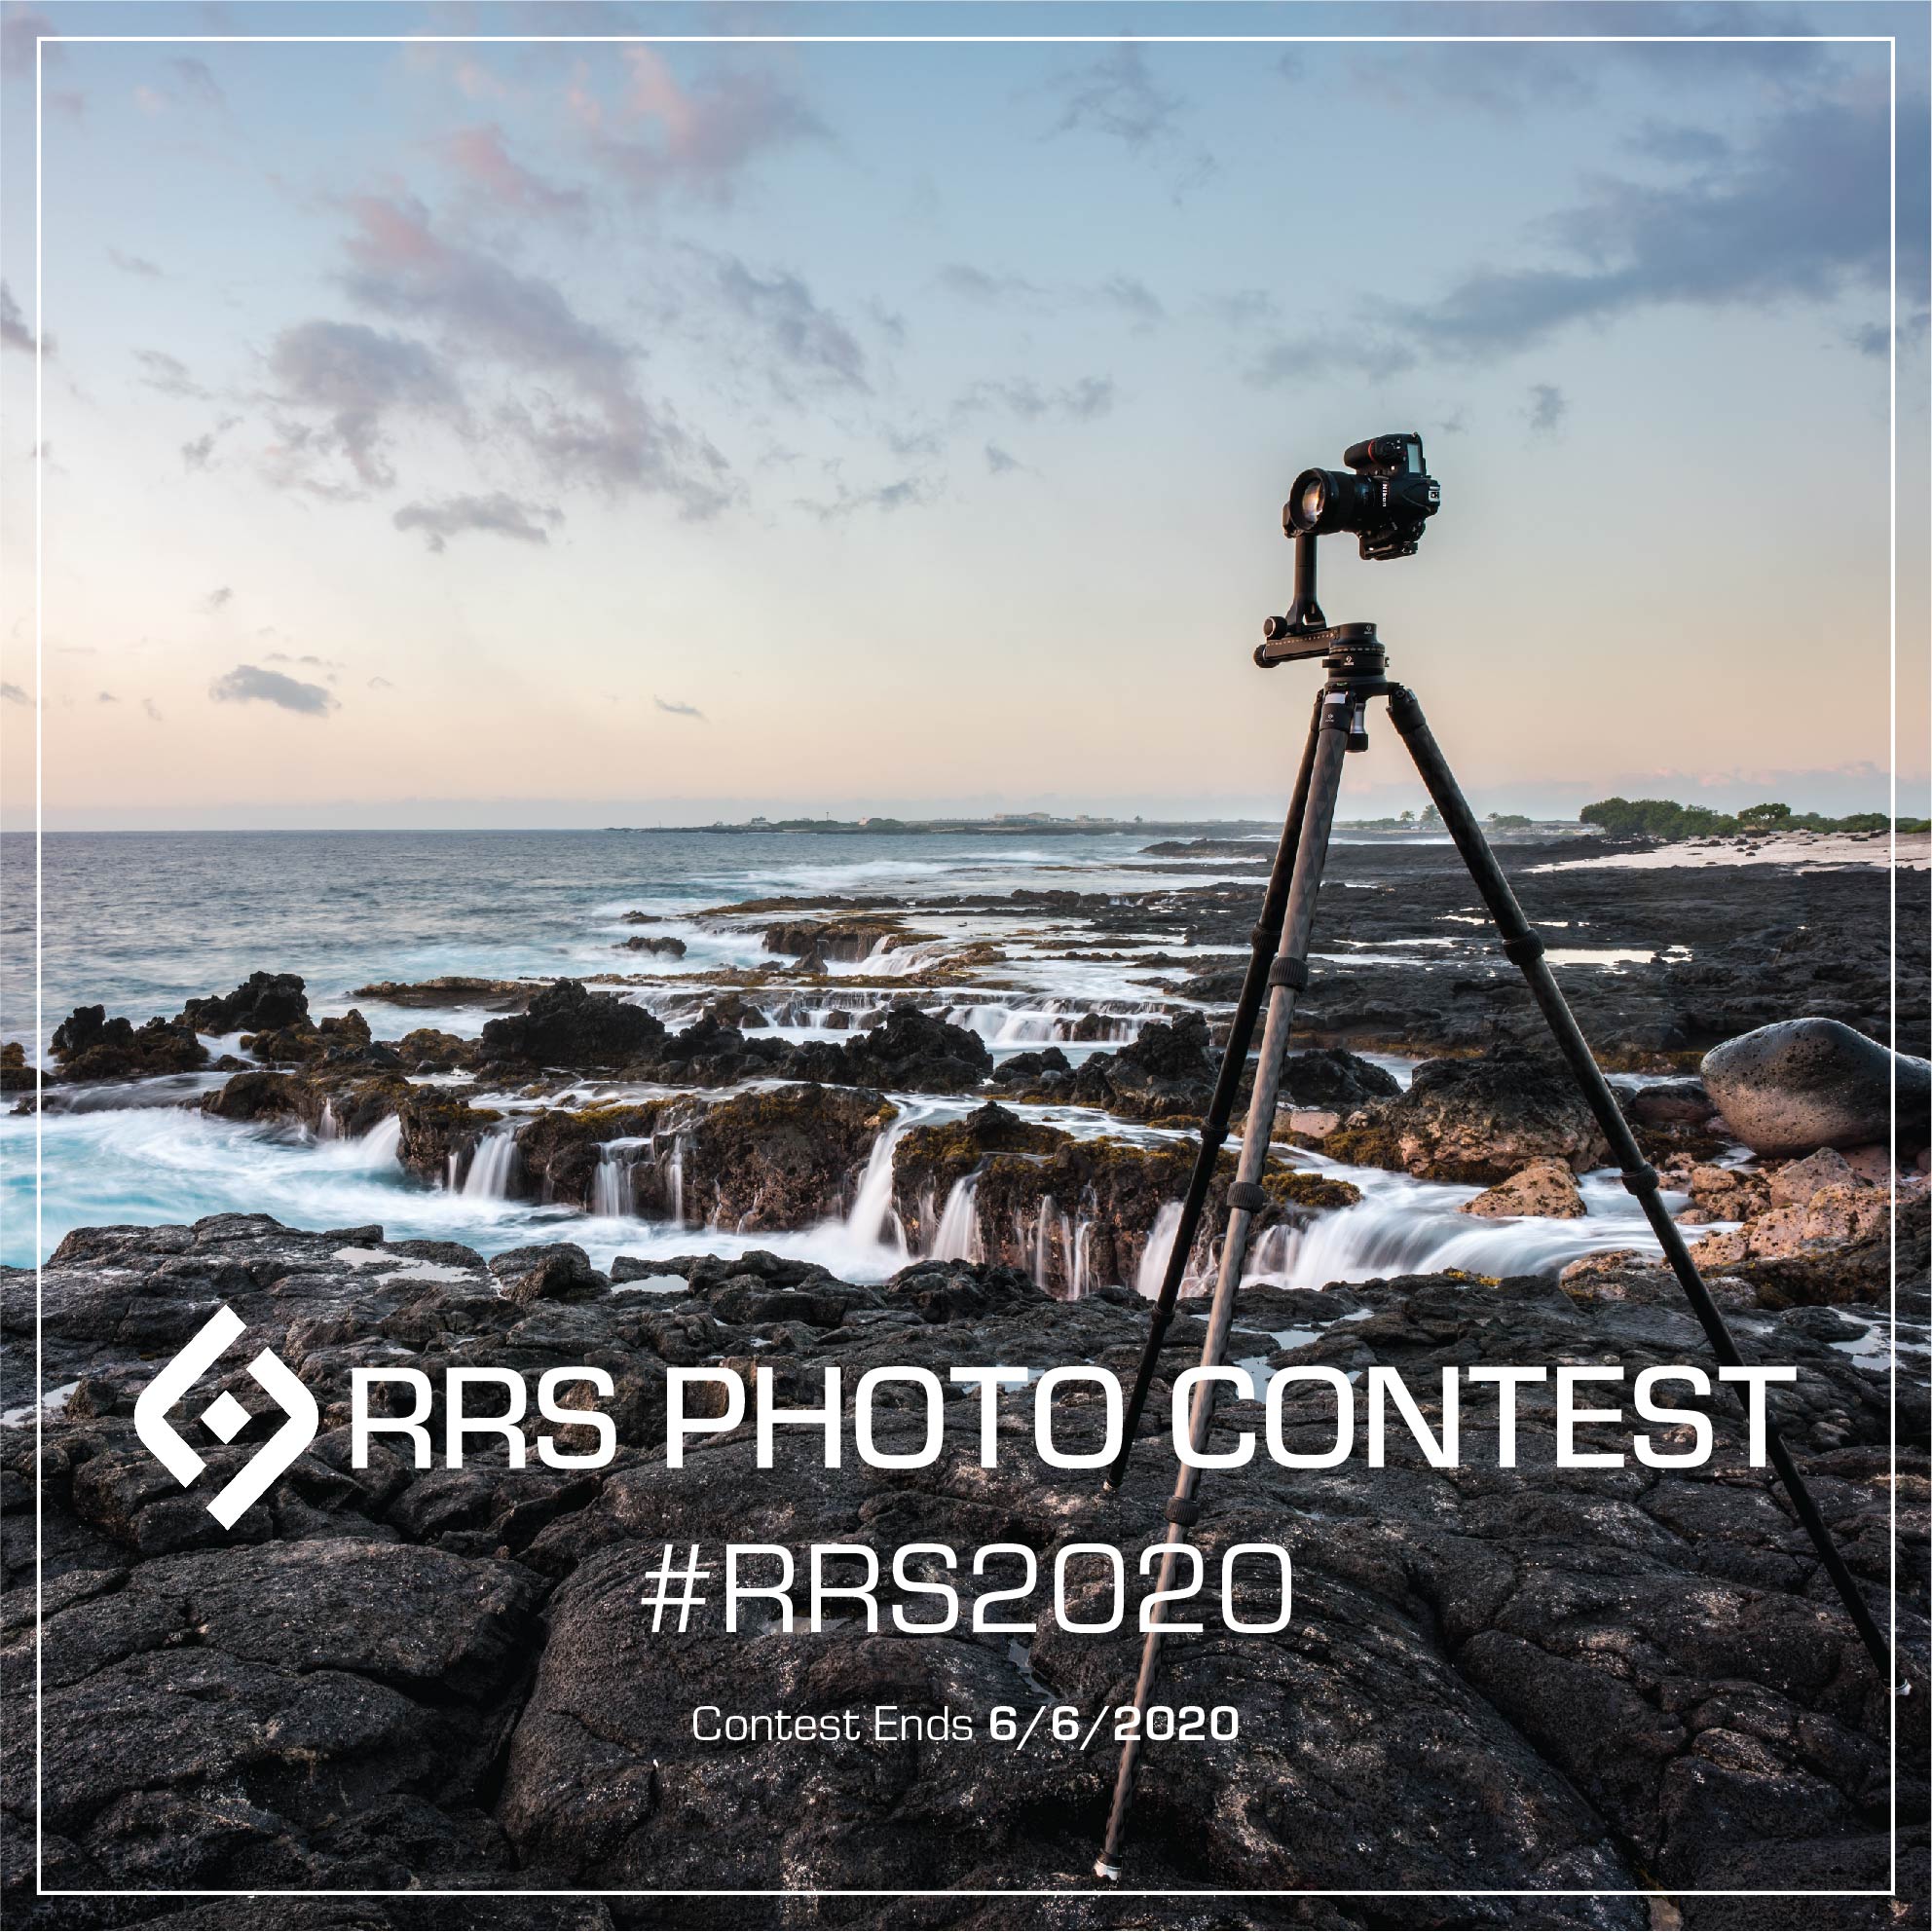 RRS Photo Contest #RRS2020 Contest Ends 6/6/2020